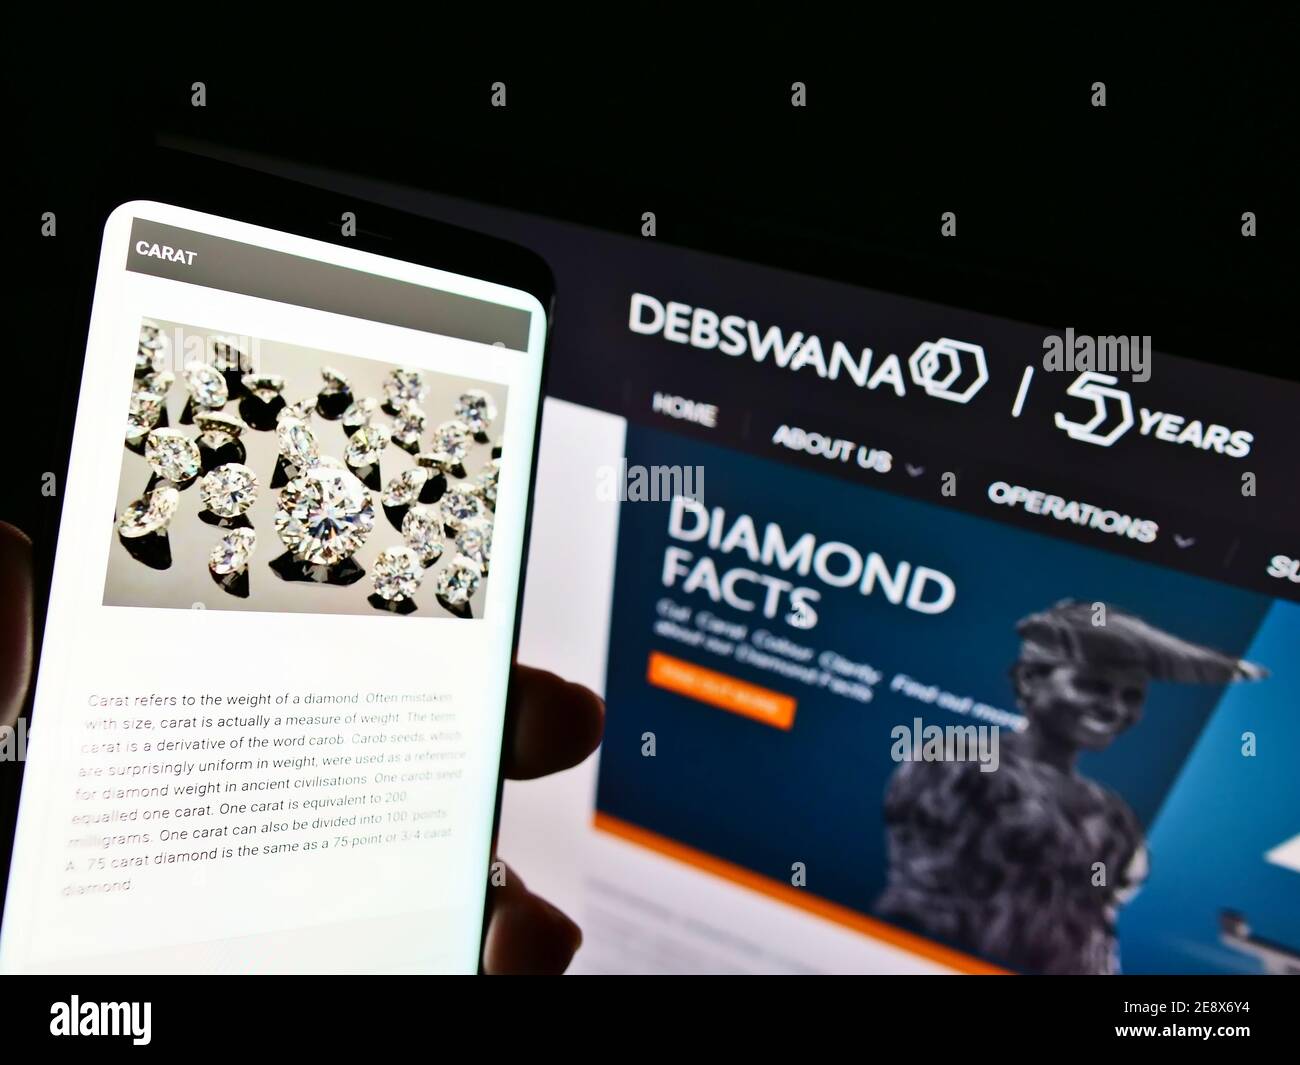 Persona che detiene smartphone con il sito web della società mineraria Debswana Diamond Company Limited davanti al logo. Mettere a fuoco nella parte superiore centrale dello schermo del telefono. Foto Stock